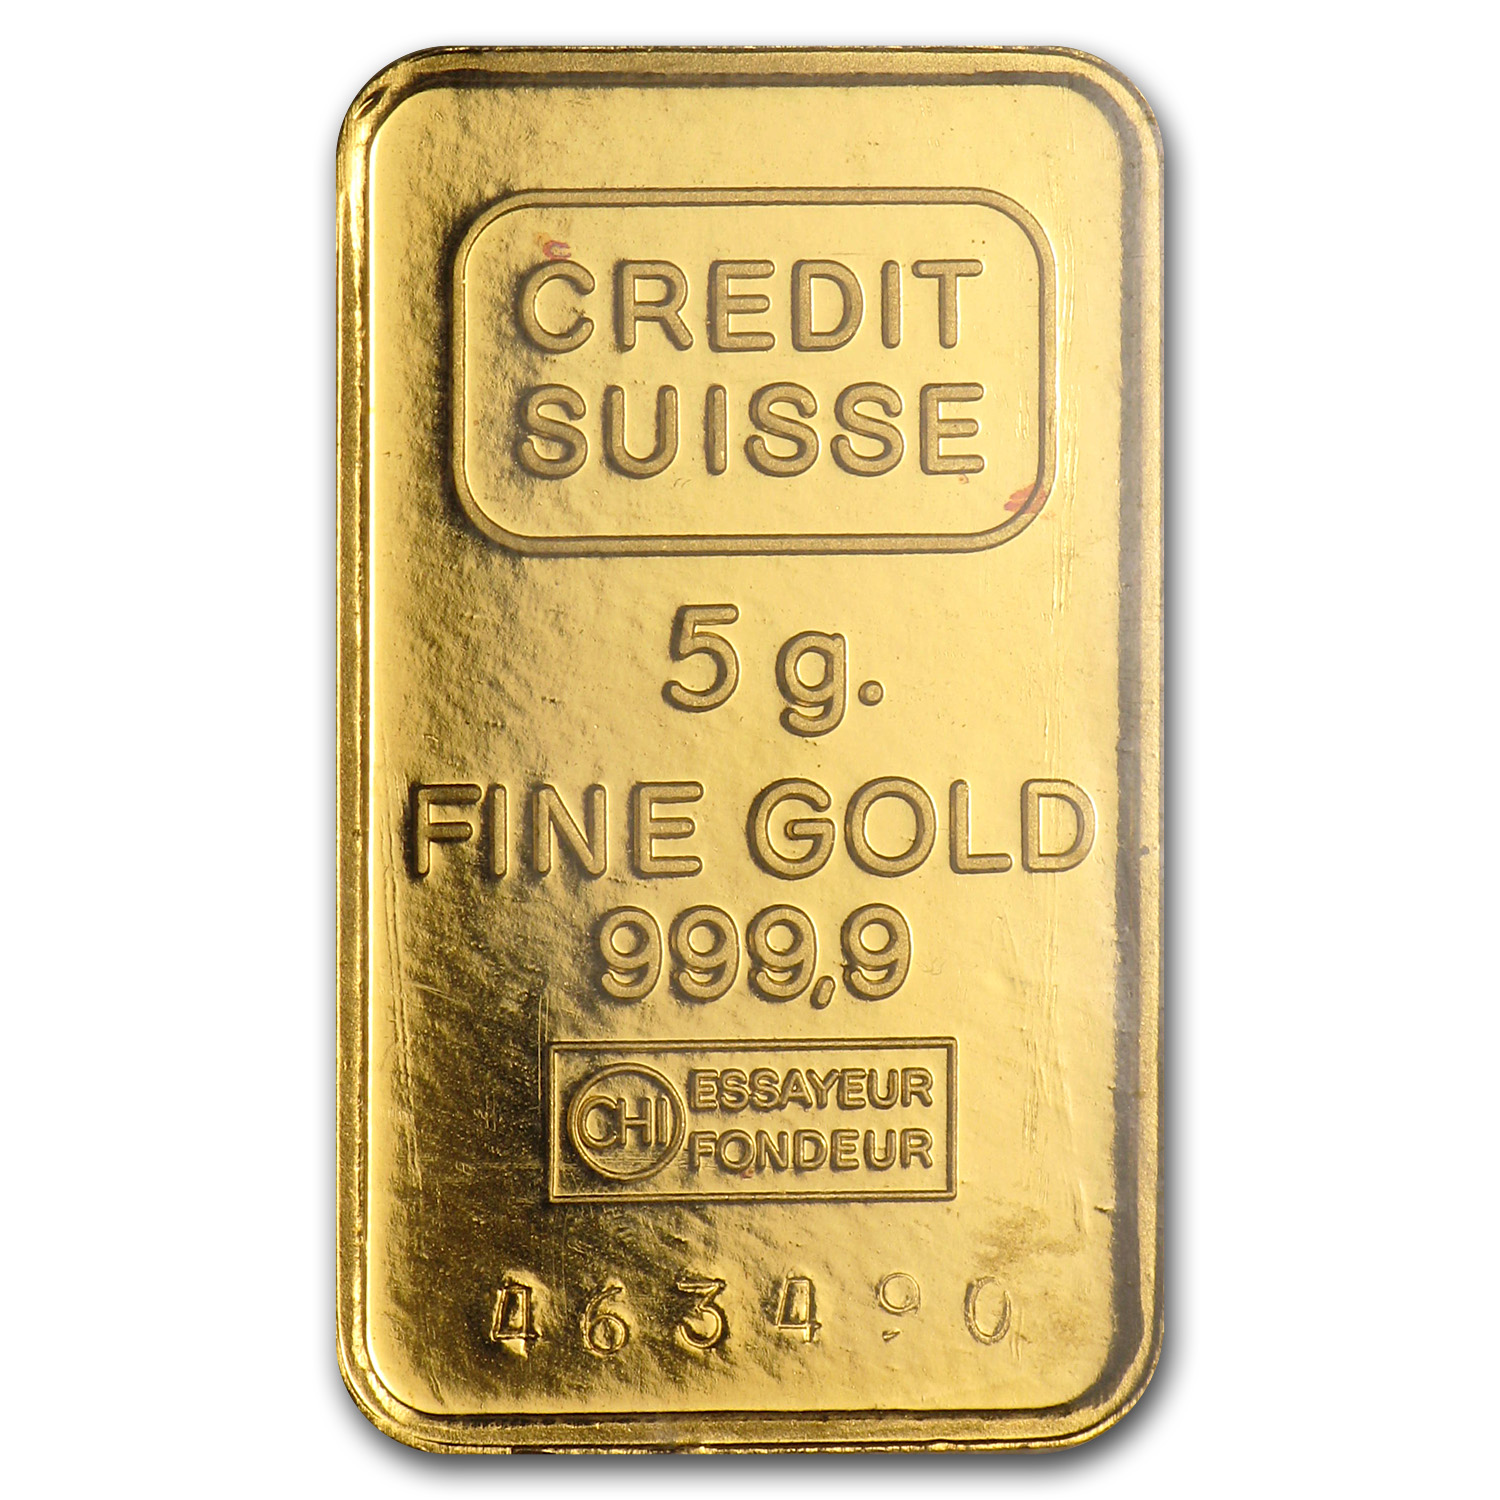 1 gram credit suisse gold bar